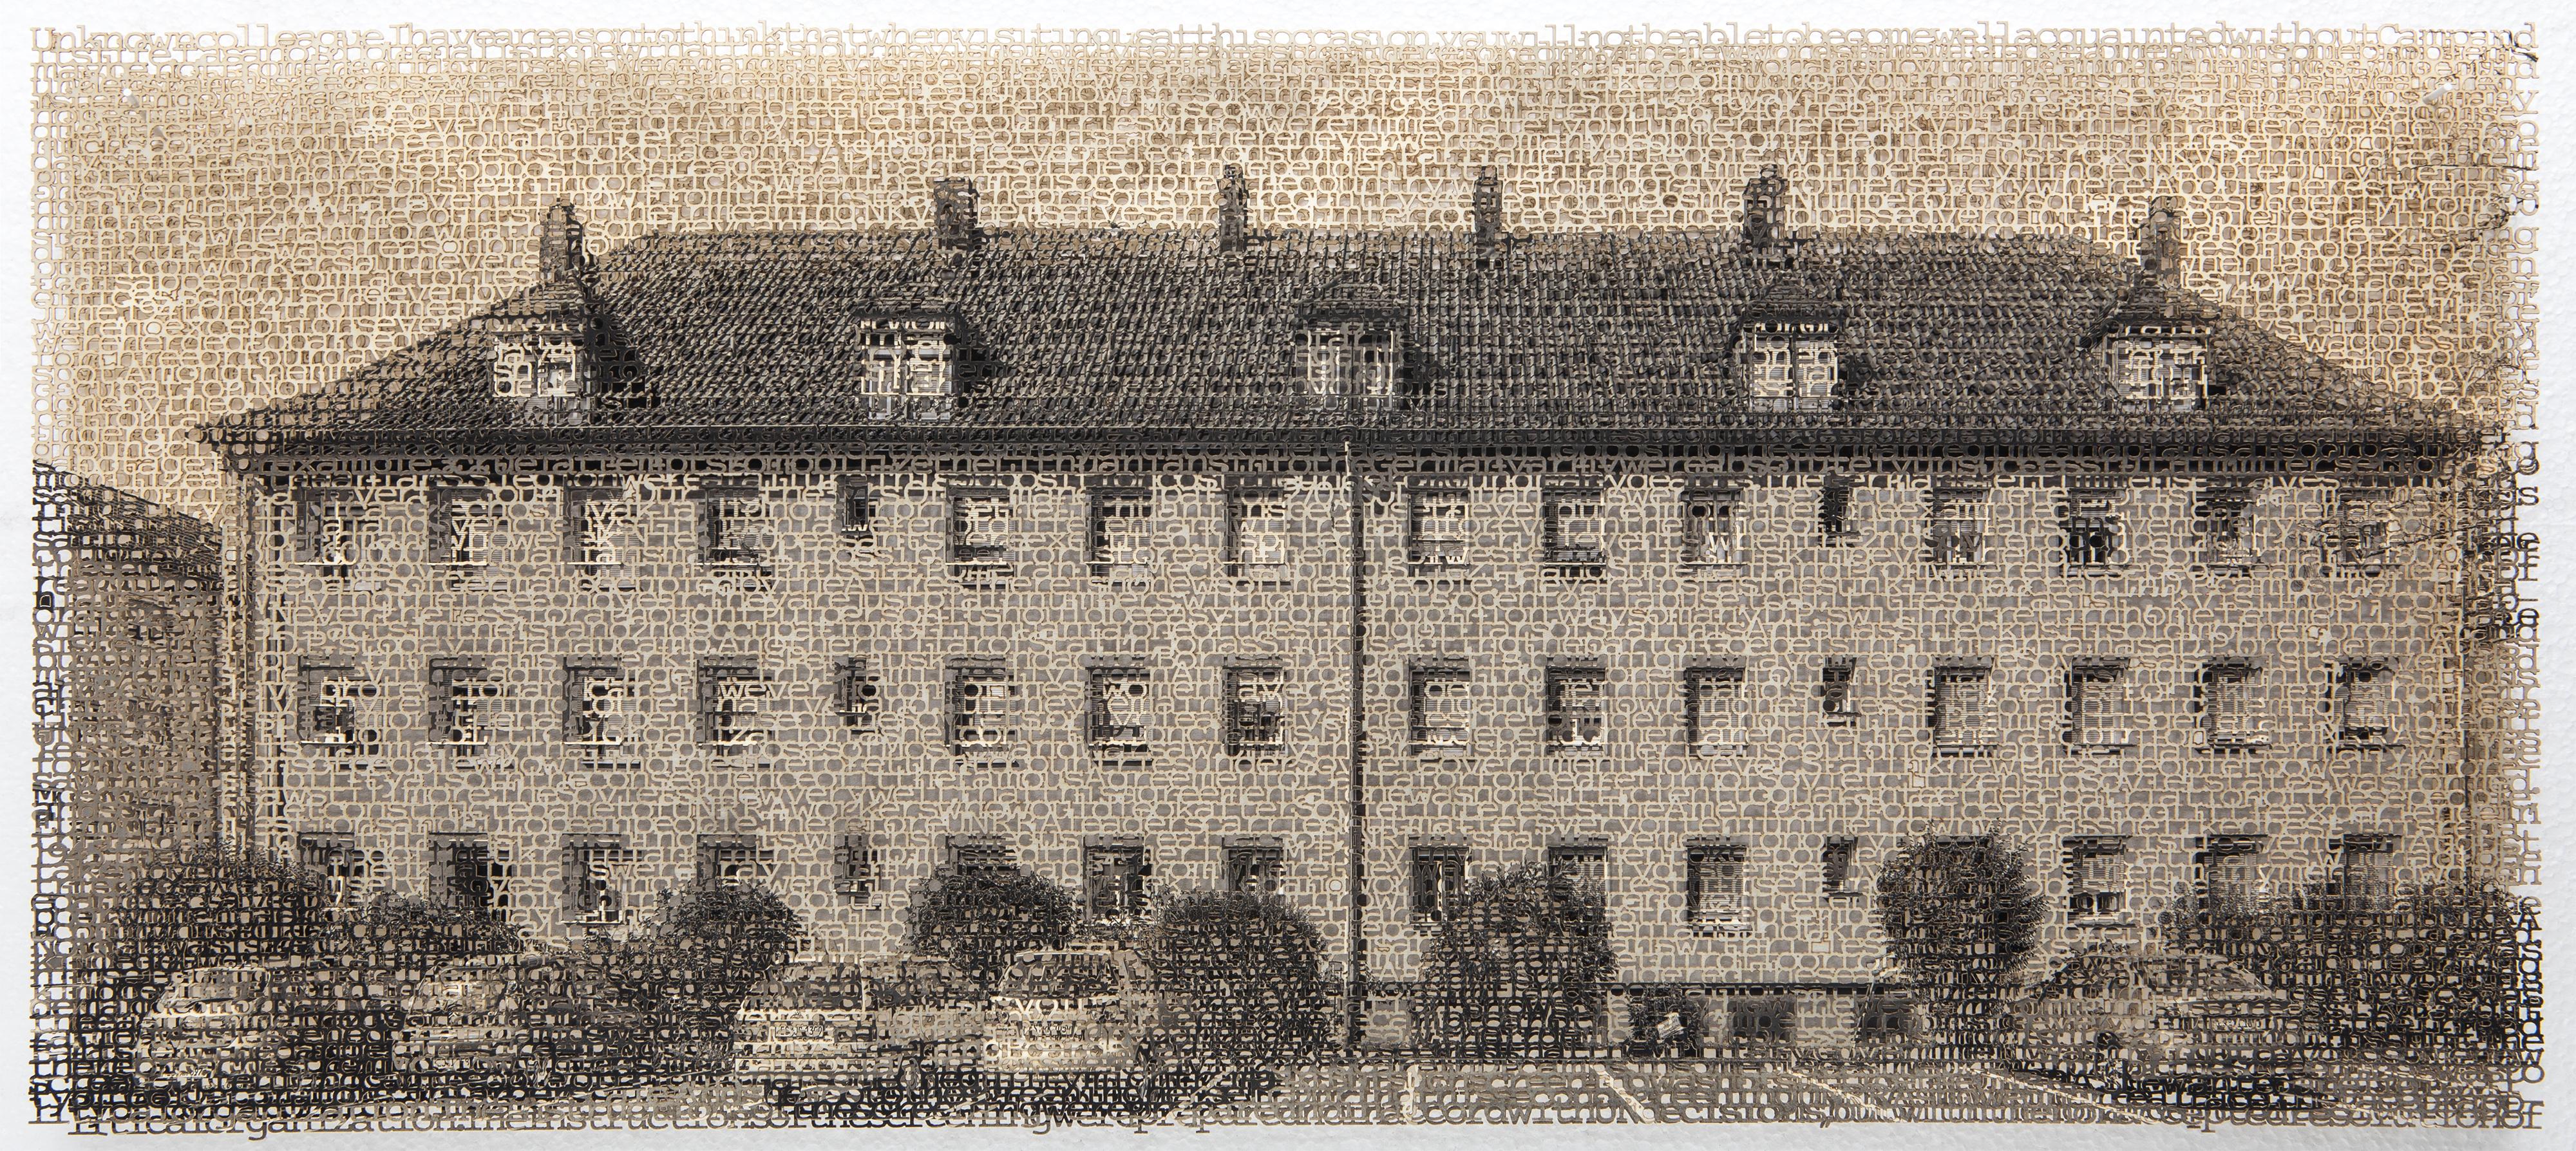 Krista Svalbonas Black and White Photograph - Esslingen 1, Laser cut archival pigment ink print, signed, numbered, framed 